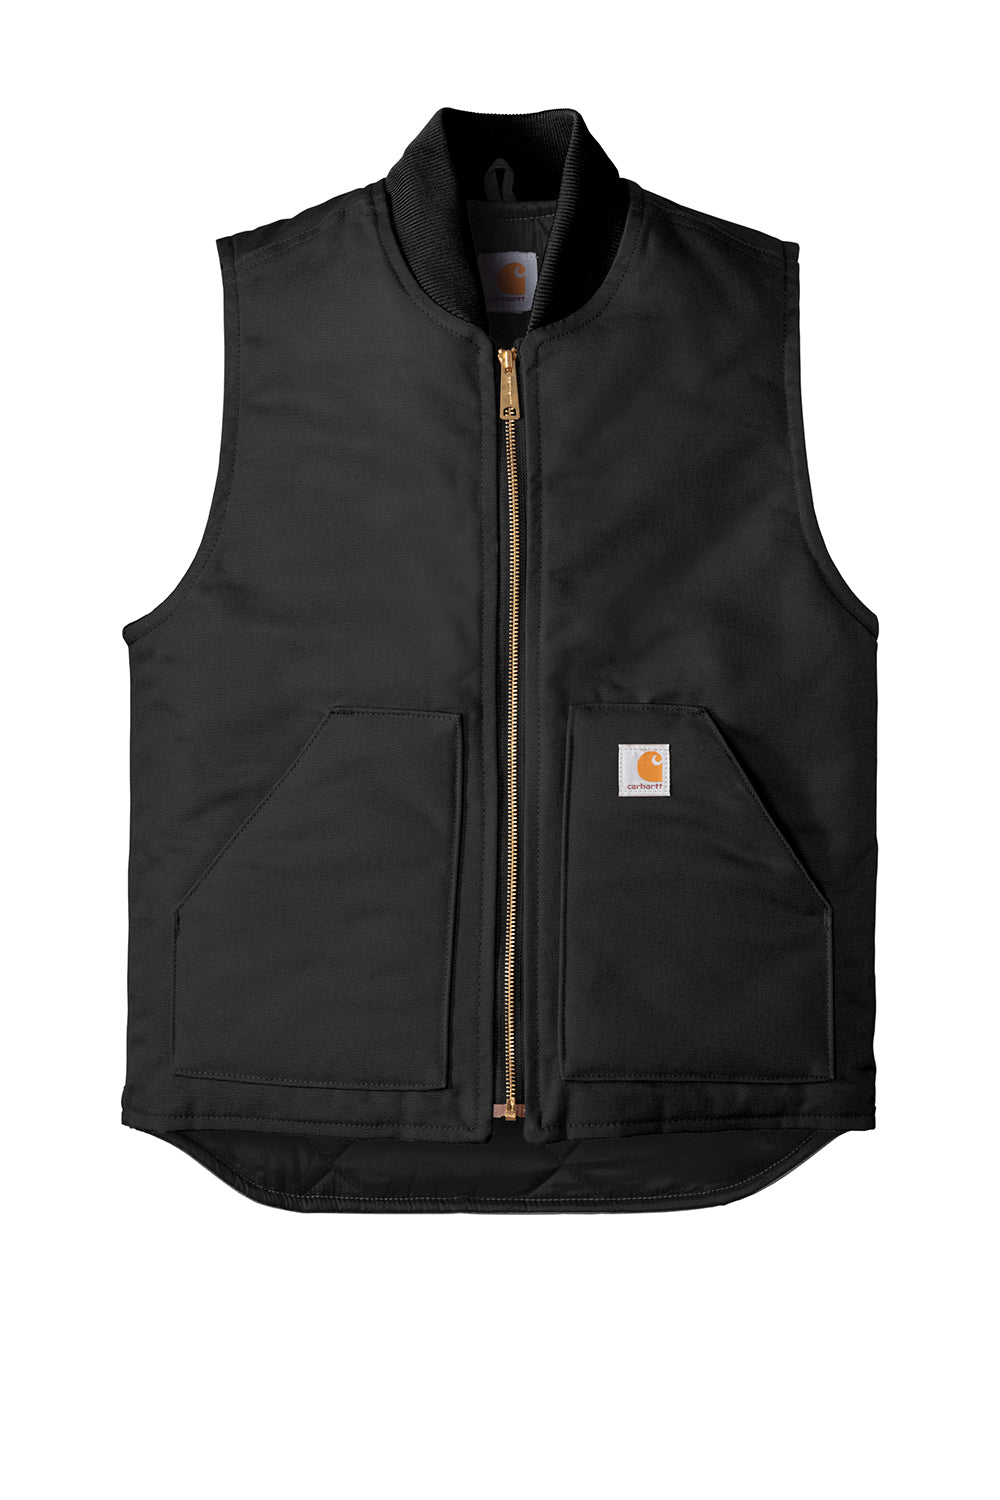 Carhartt CTV01 Mens Wind & Water Resistant Duck Cloth Full Zip Vest Black Flat Front